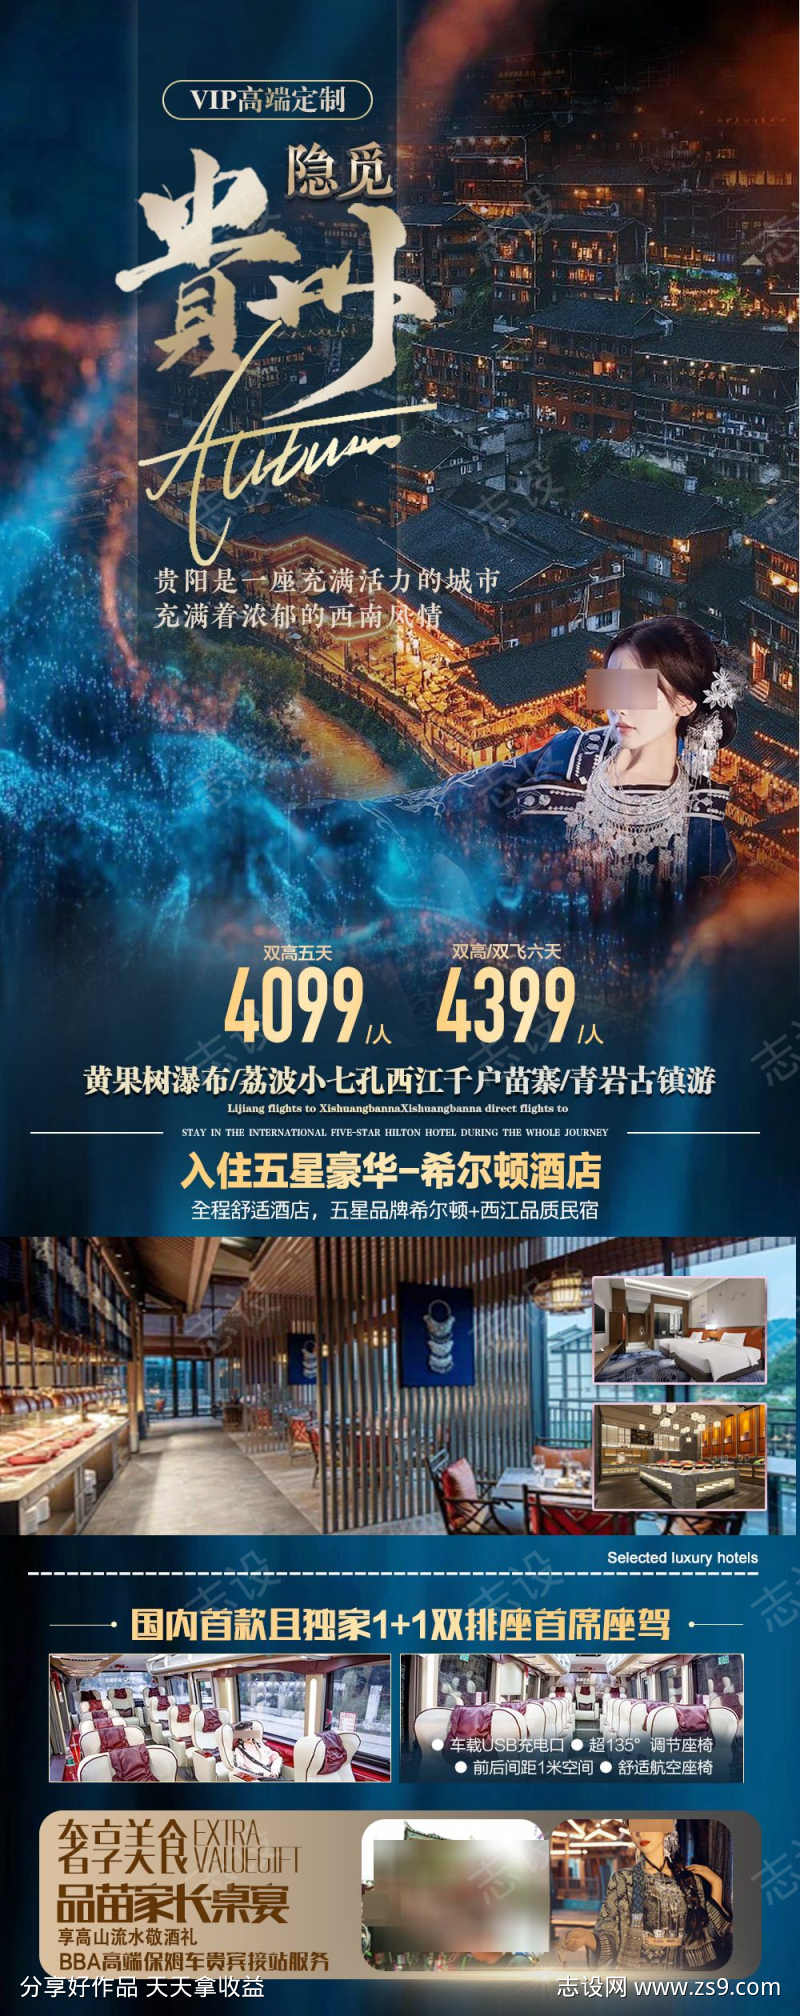 贵州旅游海报广告